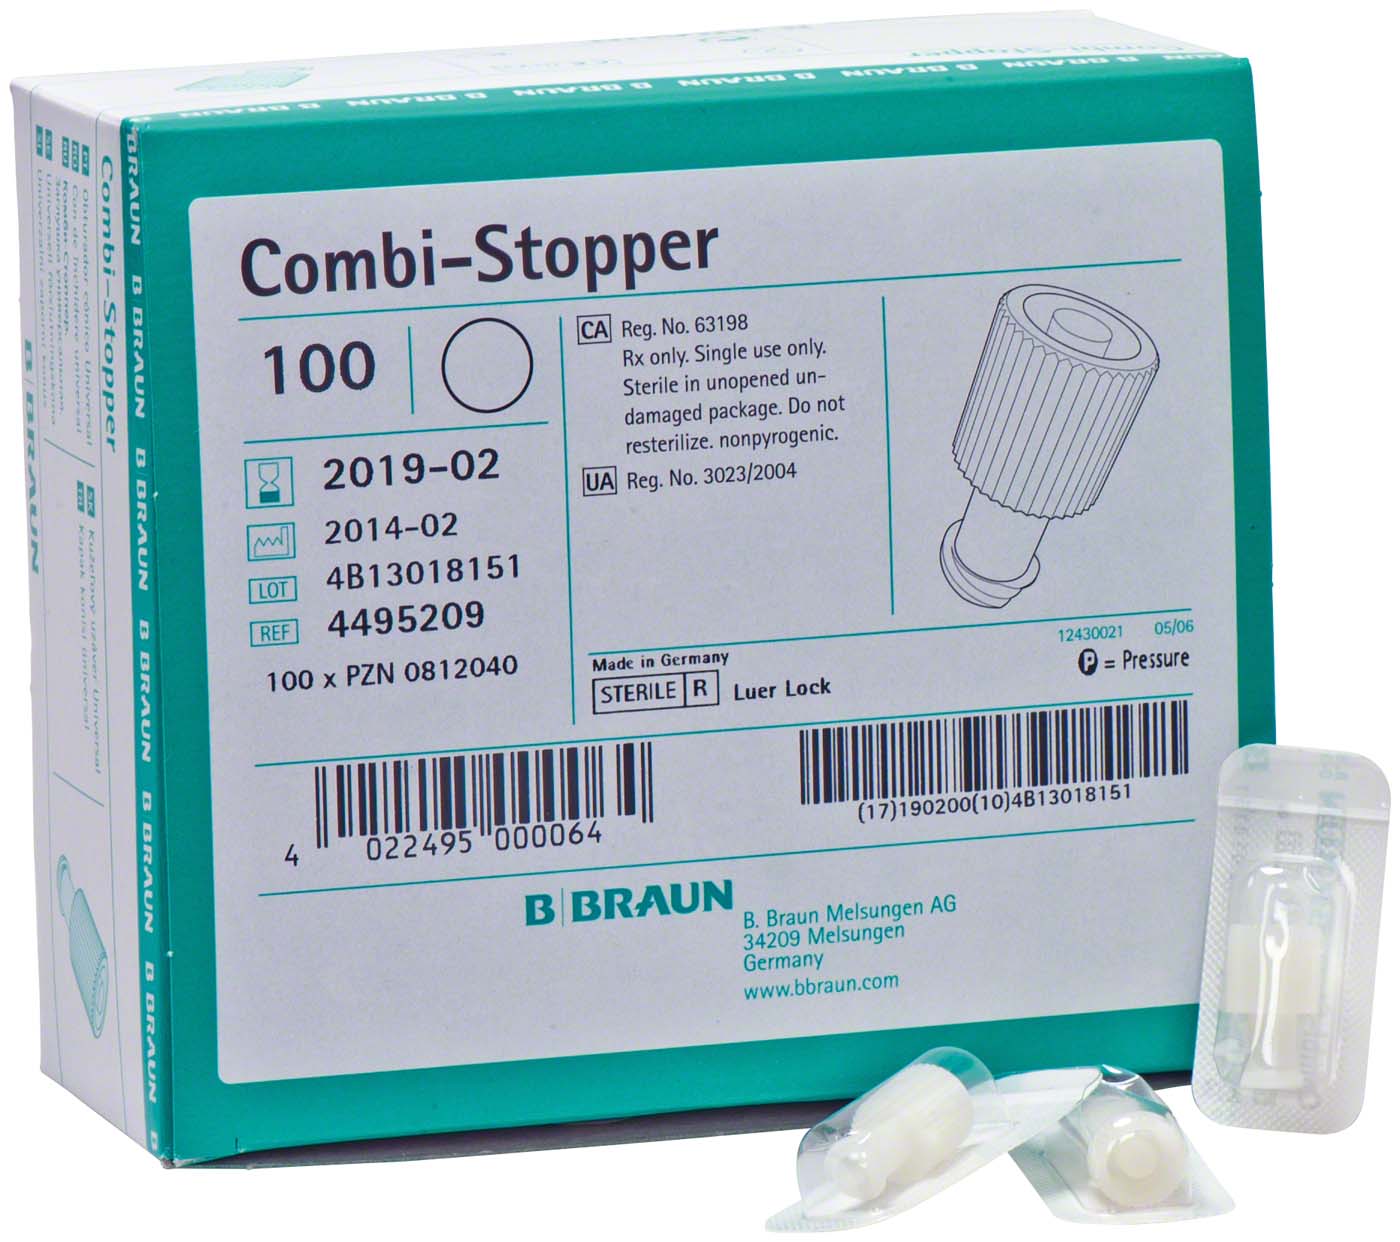 Combi-Stopper-Verschlusskonen B. Braun